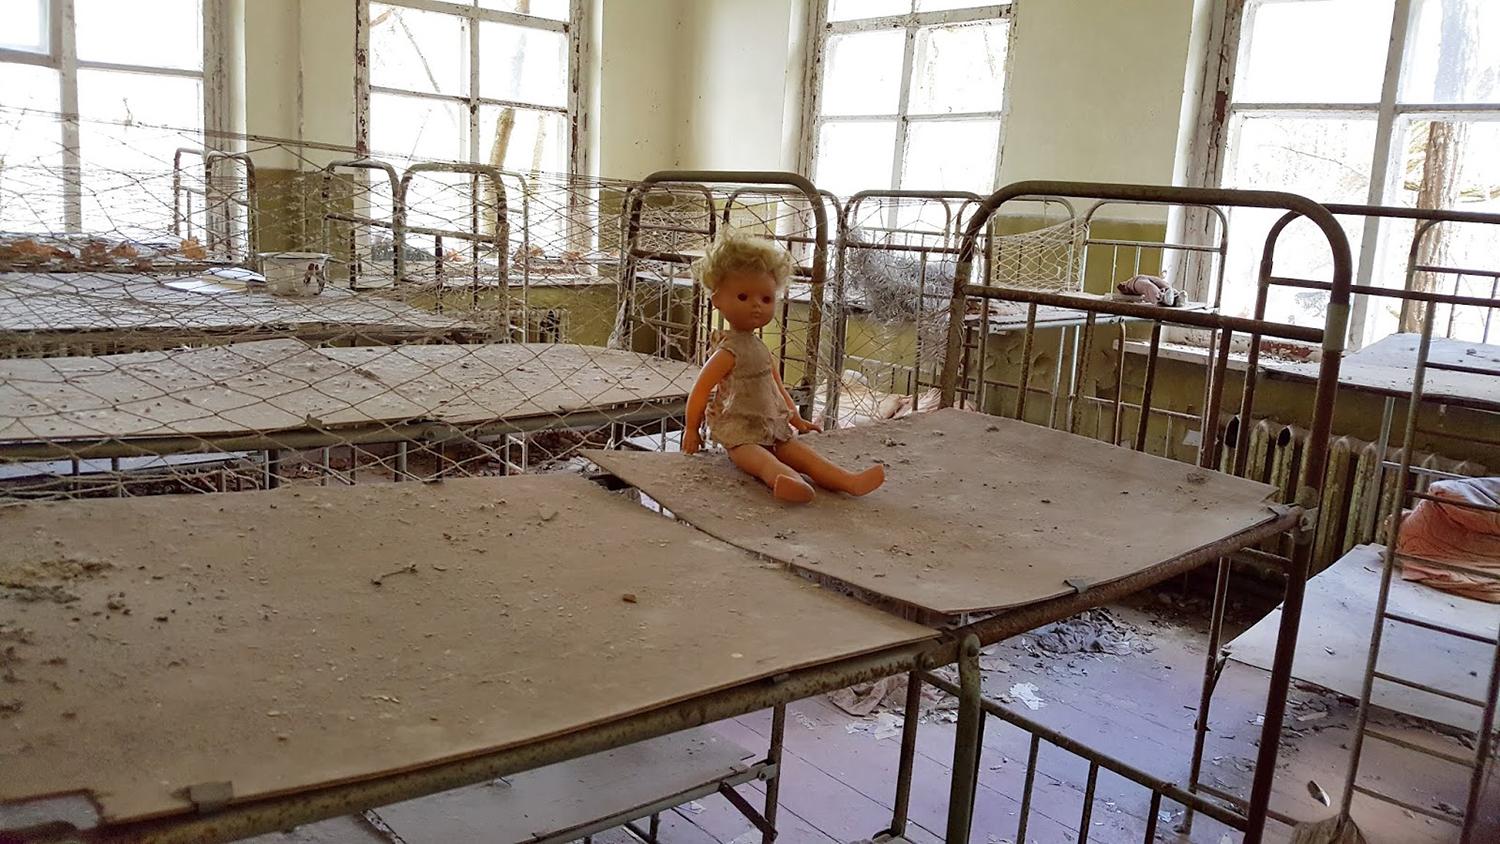 Vilioja pasiūlymu aplankyti Černobylį / Iš Černobylio